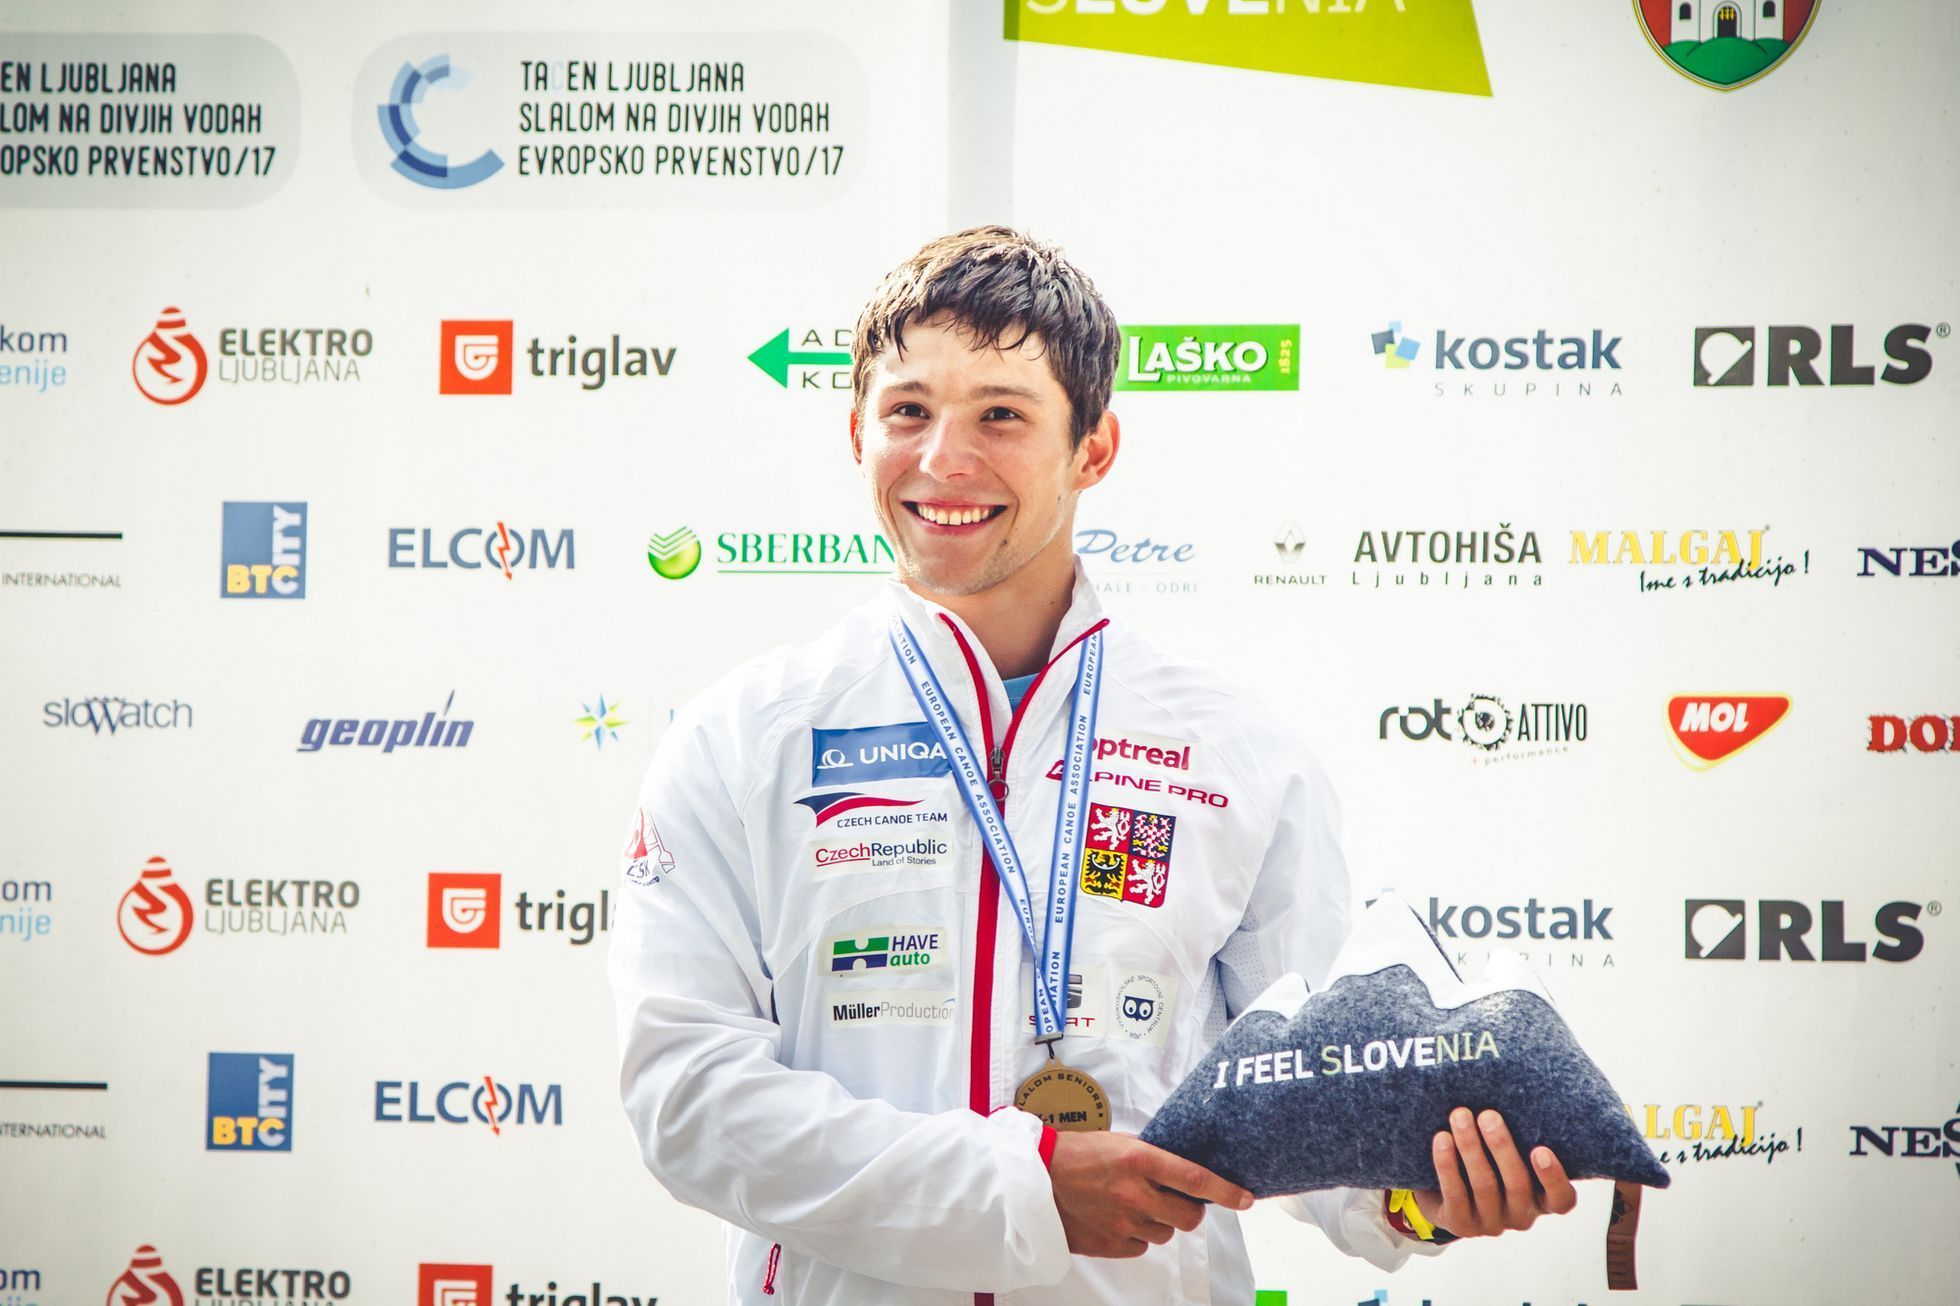 ME ve vodním slalomu 2017: Jiří Prskavec